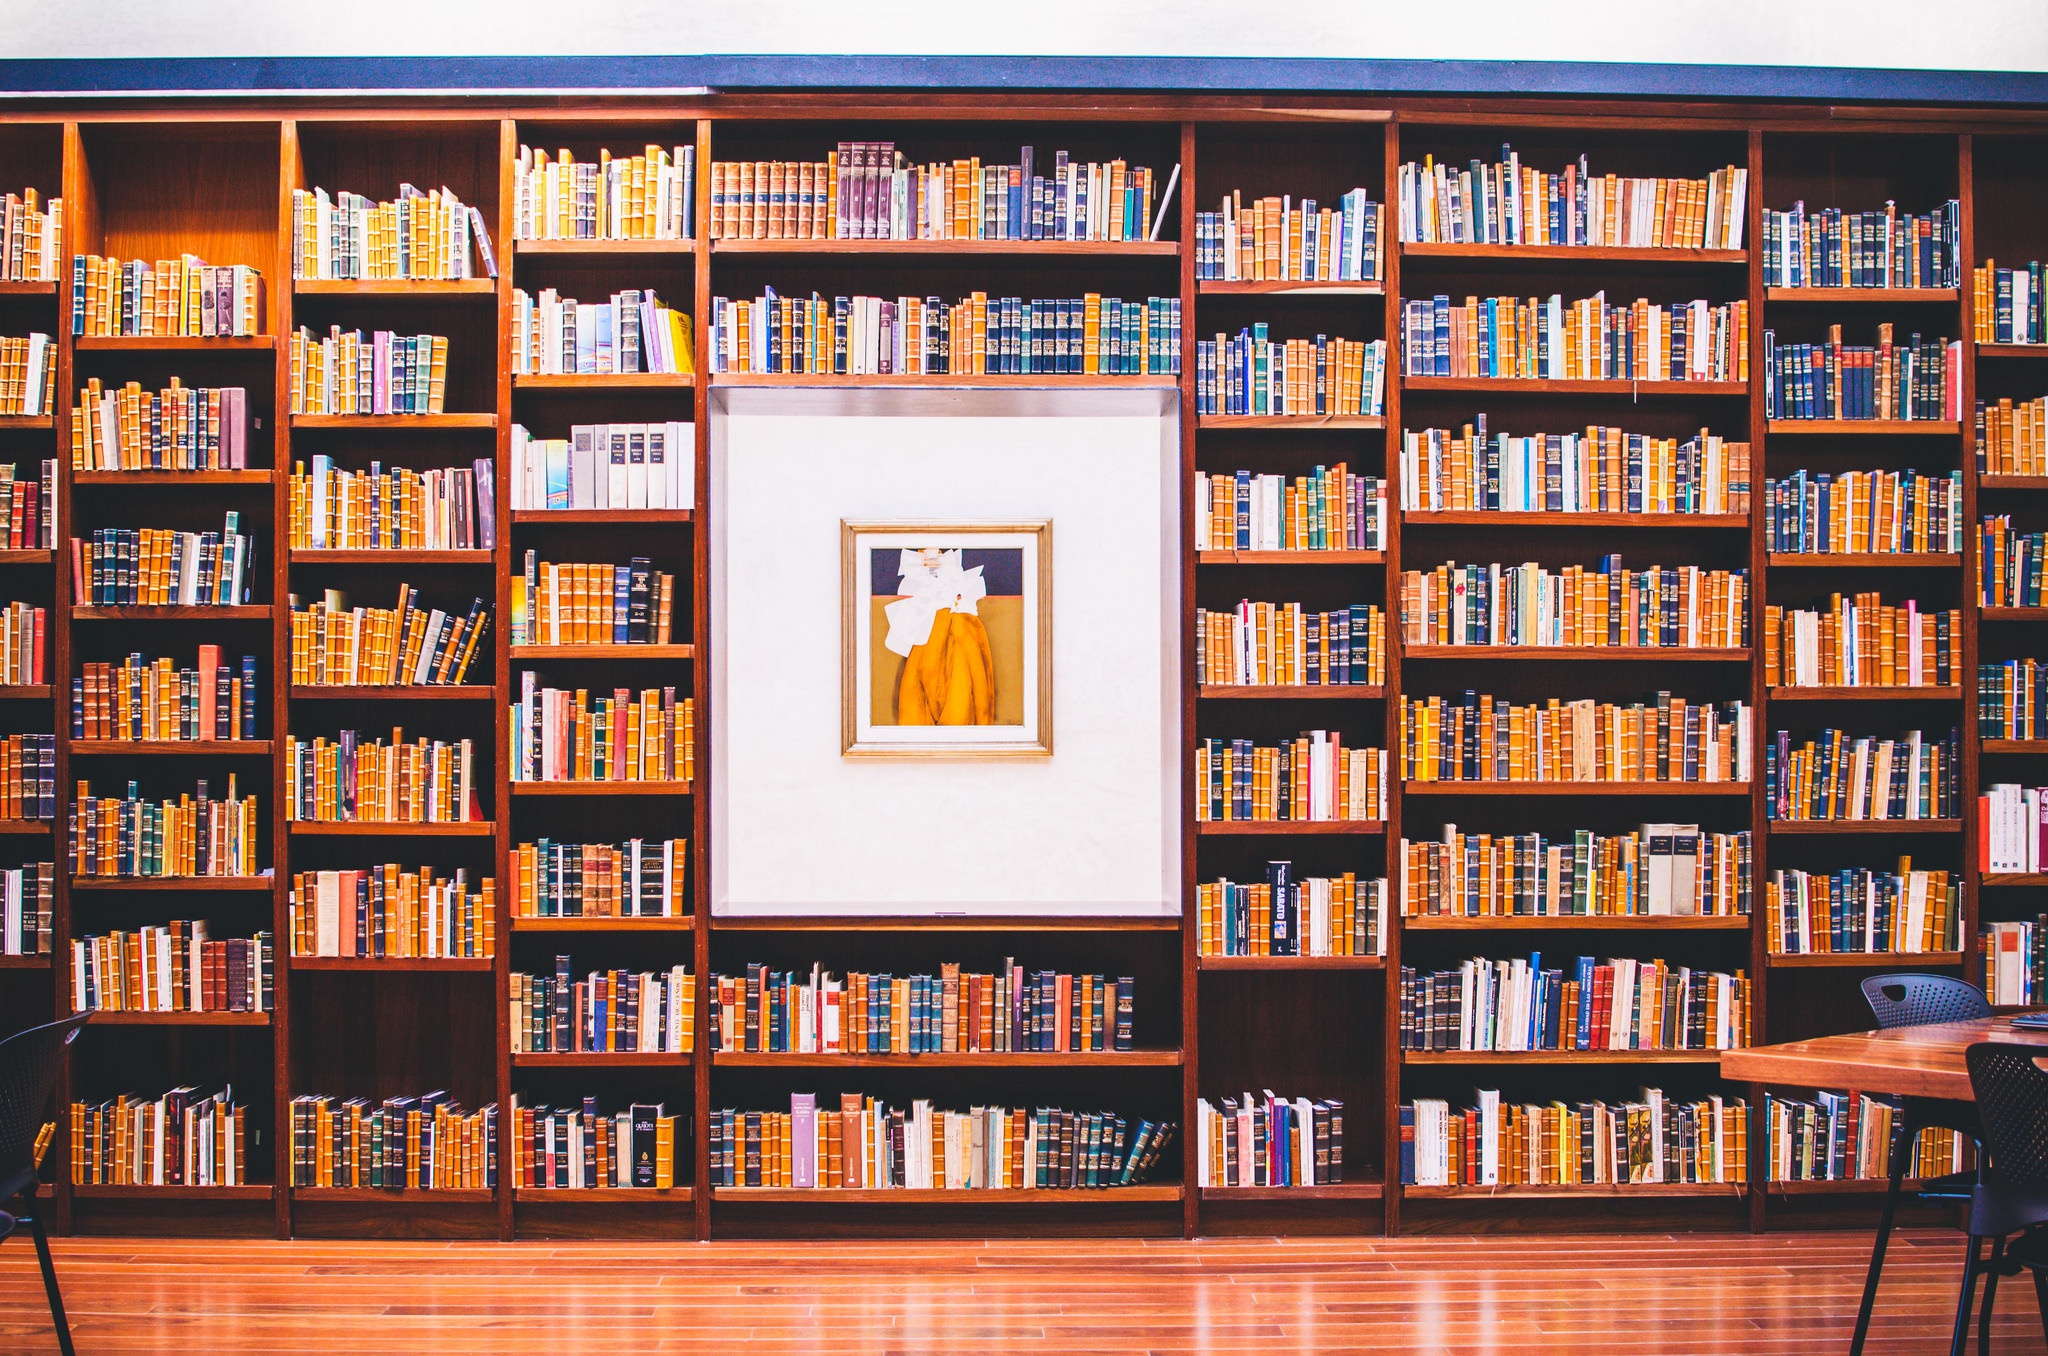 Где виртуальная библиотека. Полки для книг. Стеллаж для книг. Красивая полка с книгами. Стеллажи для книг в библиотеку.